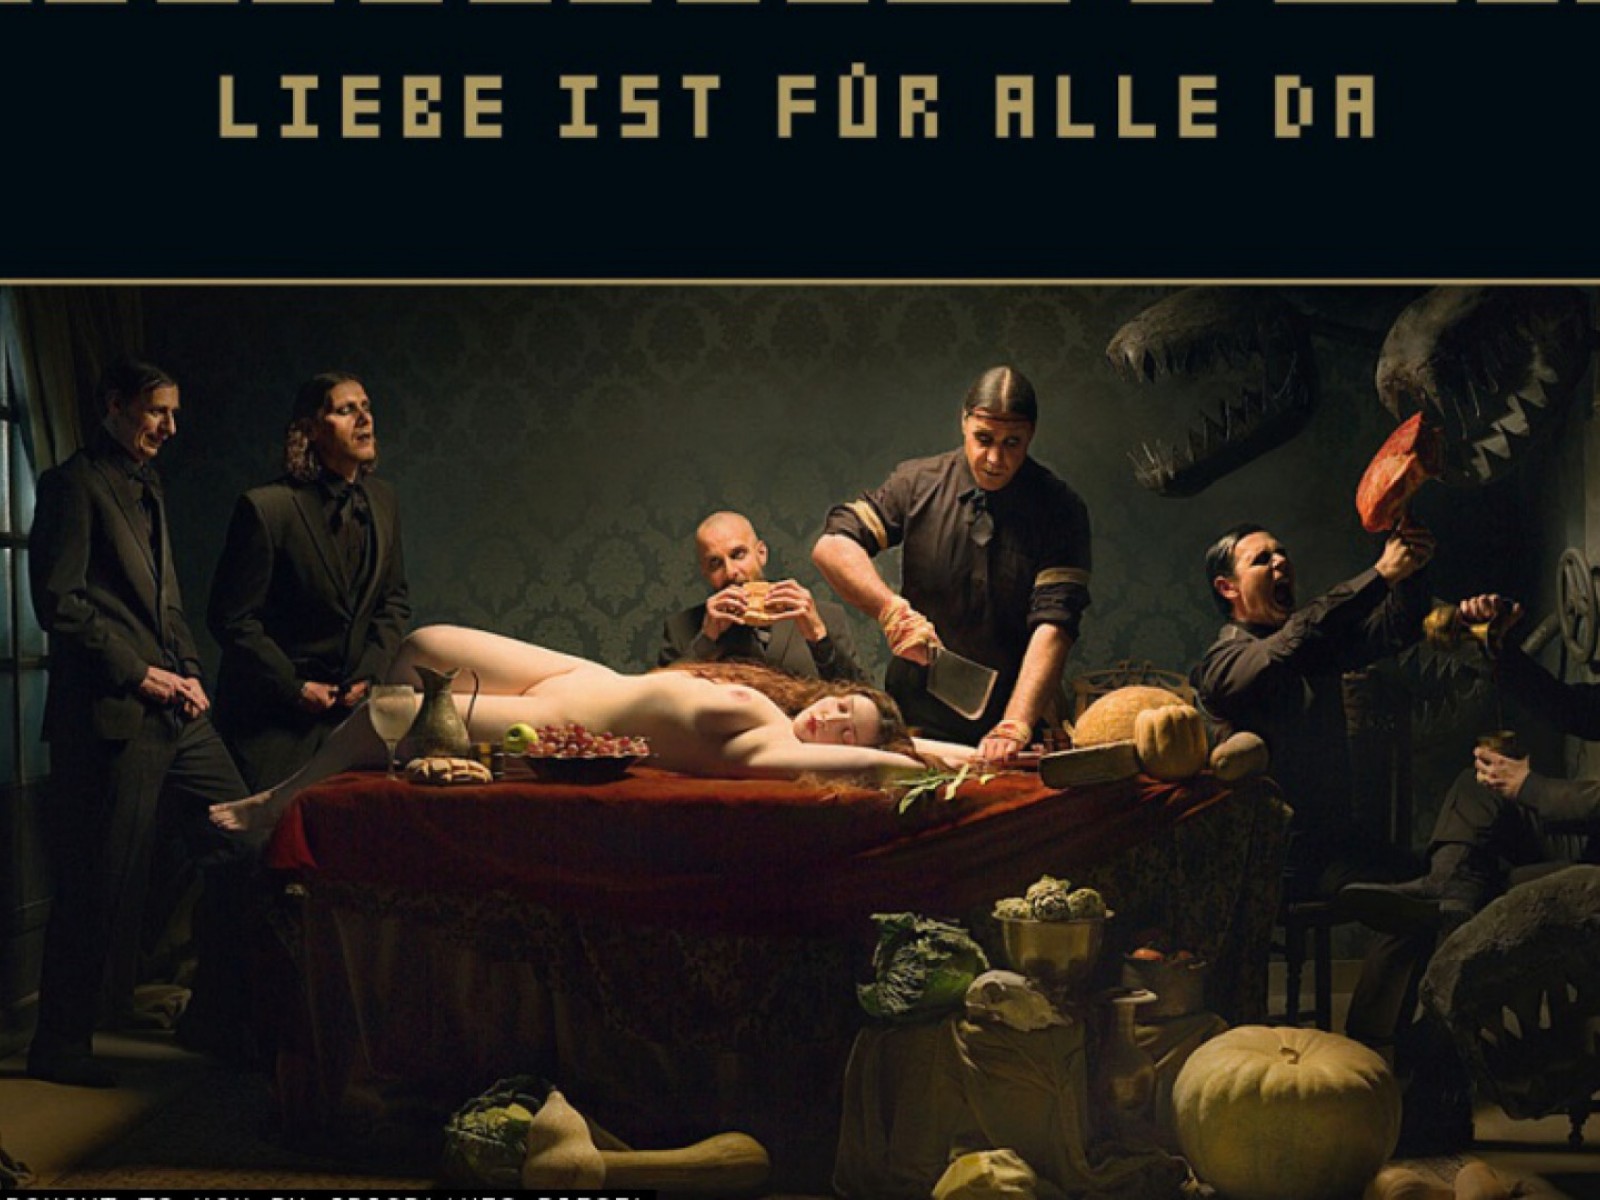 Rammstein - LIEBE IST FüR ALLE DA HD Wallpaper - 1600x1200.